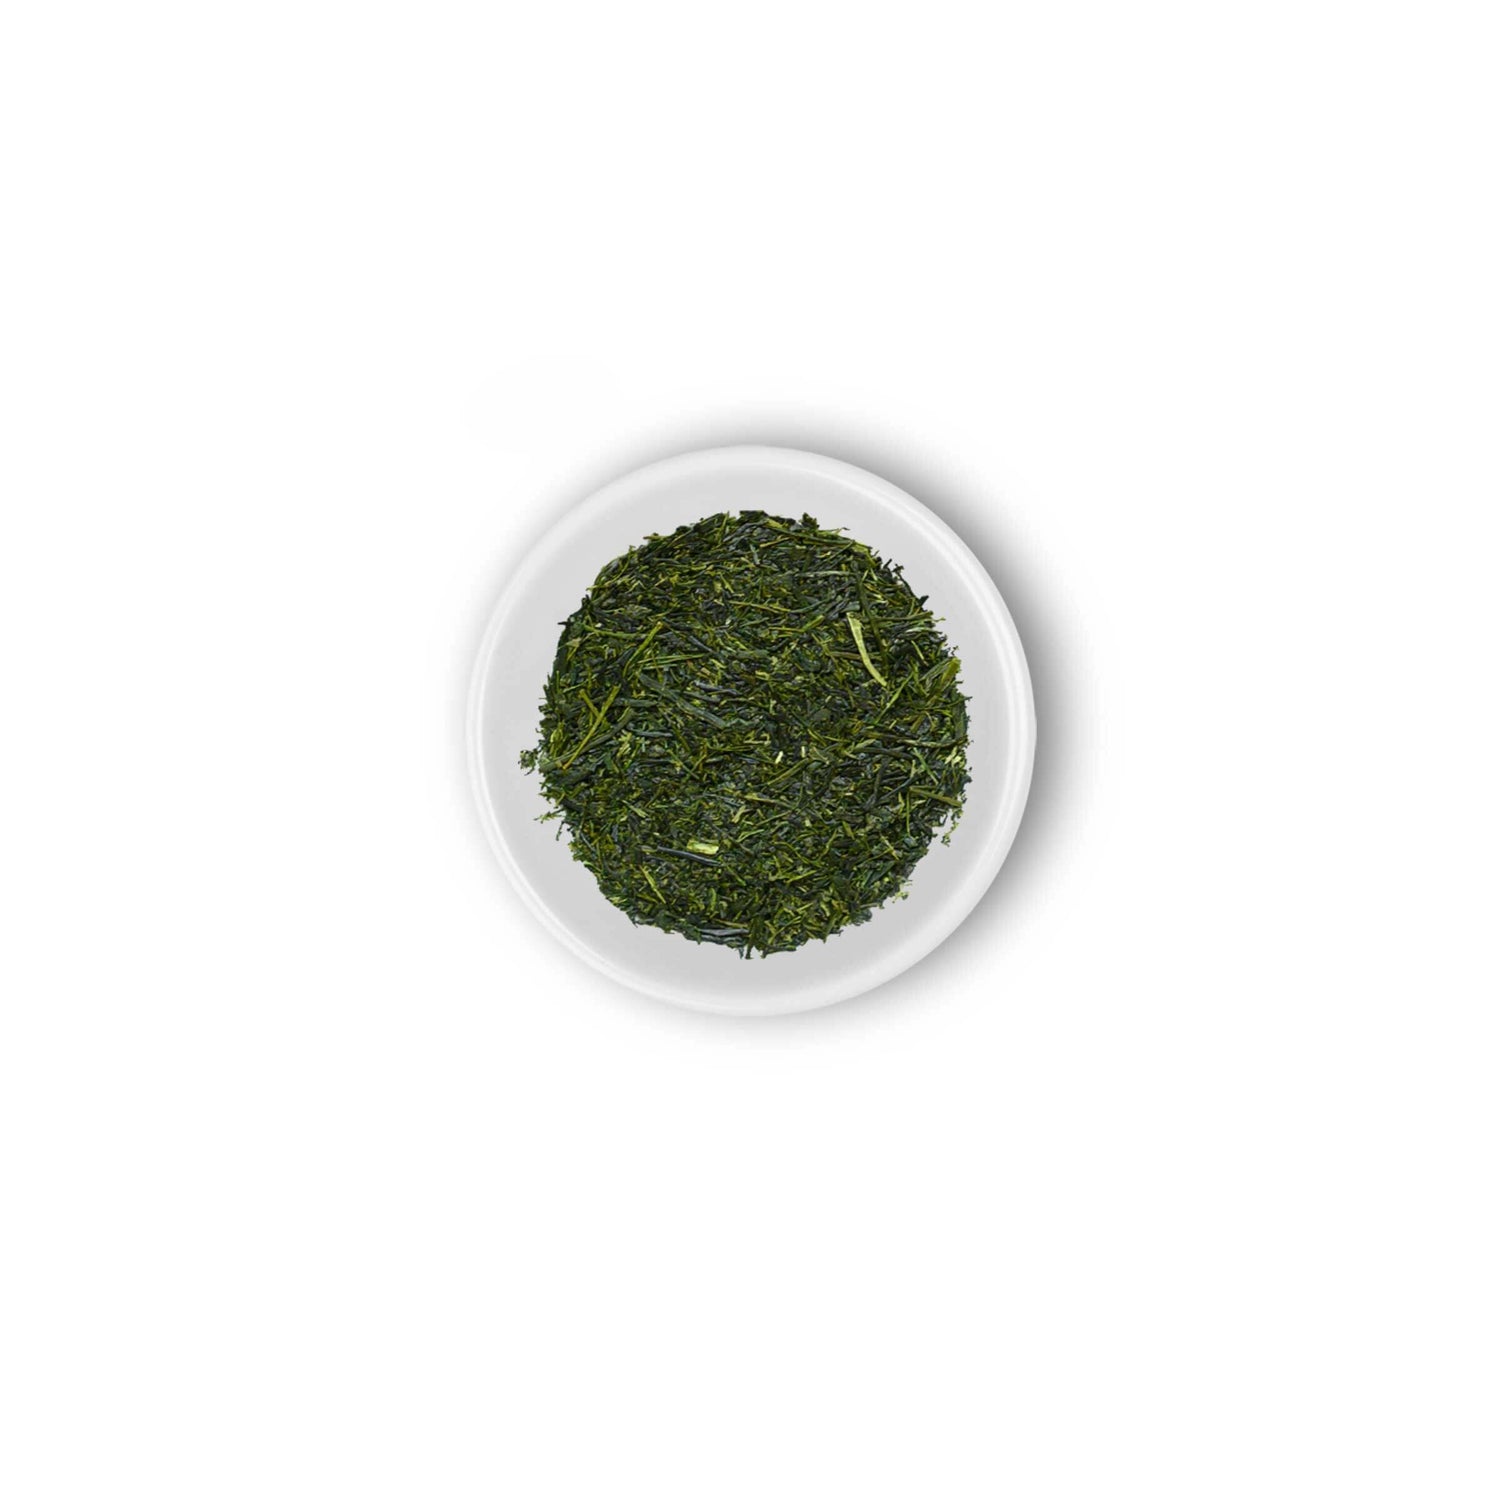 fukamushi sencha tea leaf